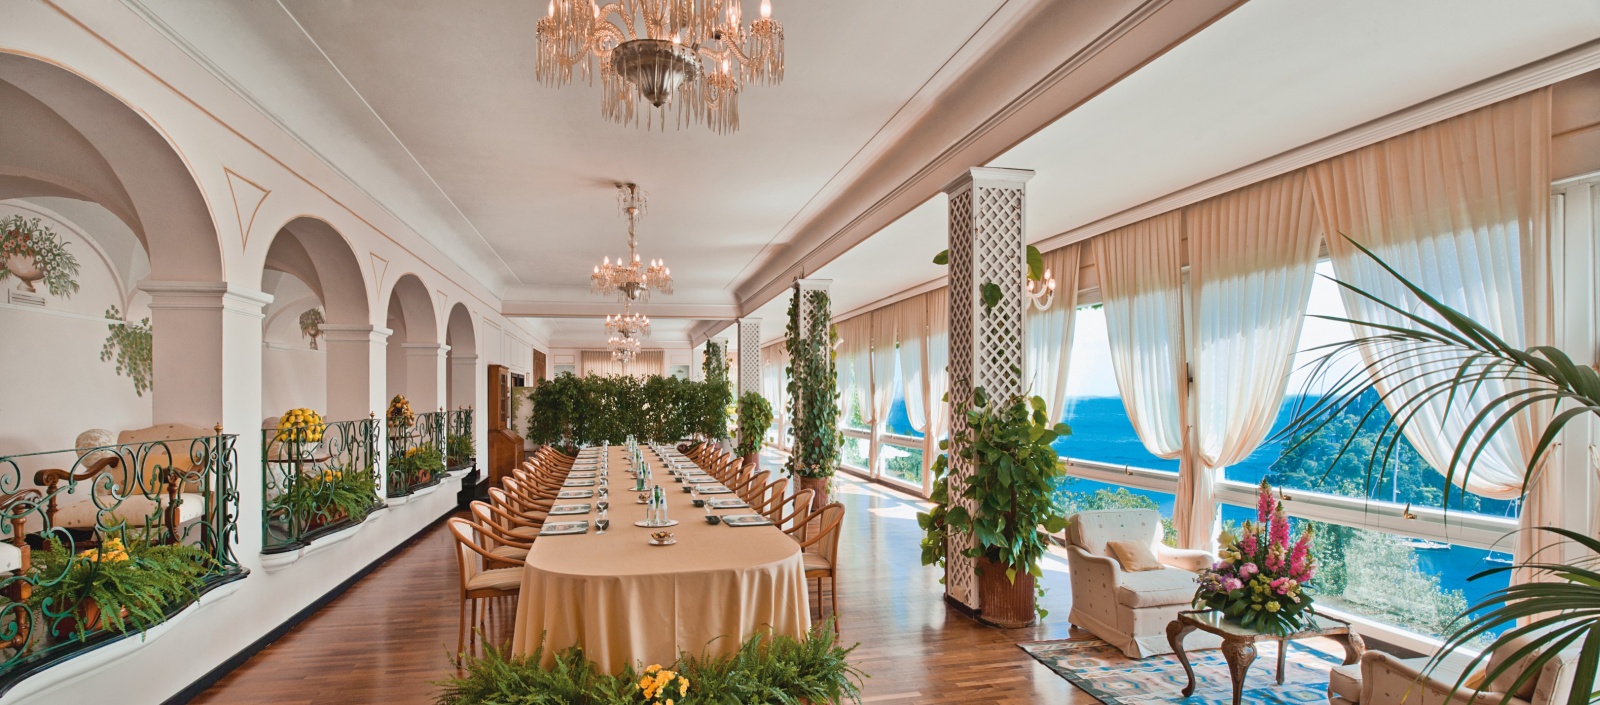 Belmond Hotel Splendido: идеальное сочетание красоты и комфорта